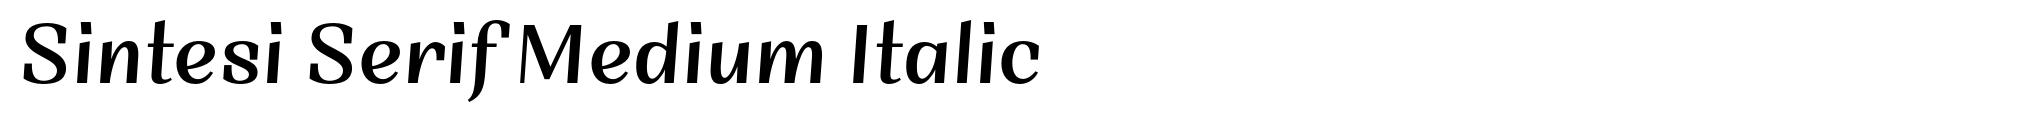 Sintesi Serif Medium Italic image